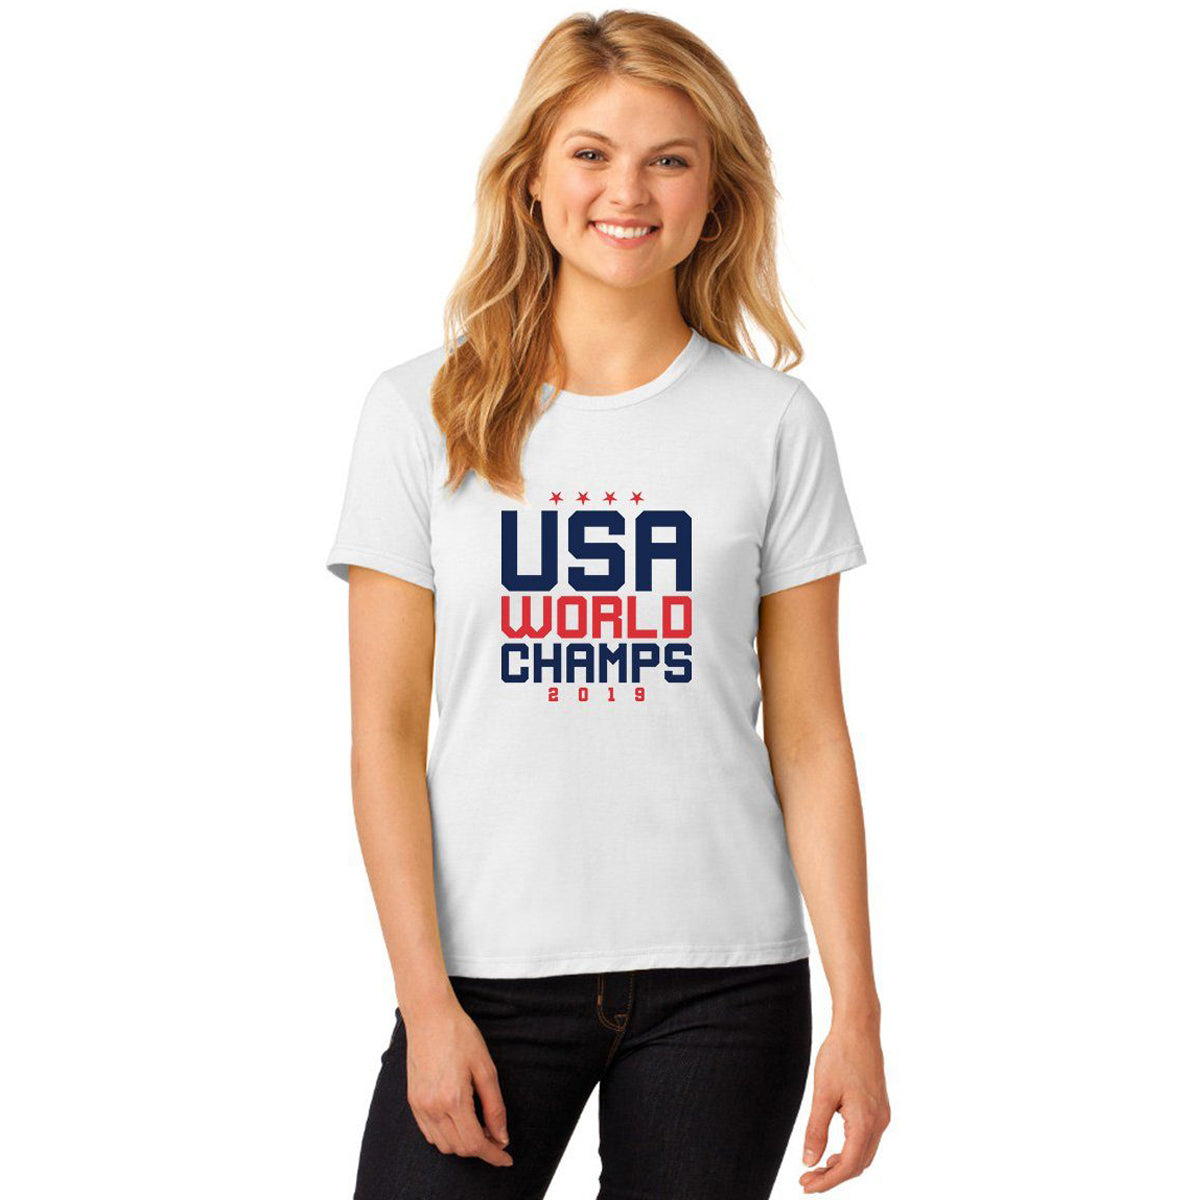 USA World Champions Shirt T-shirts 411 Small White Womens